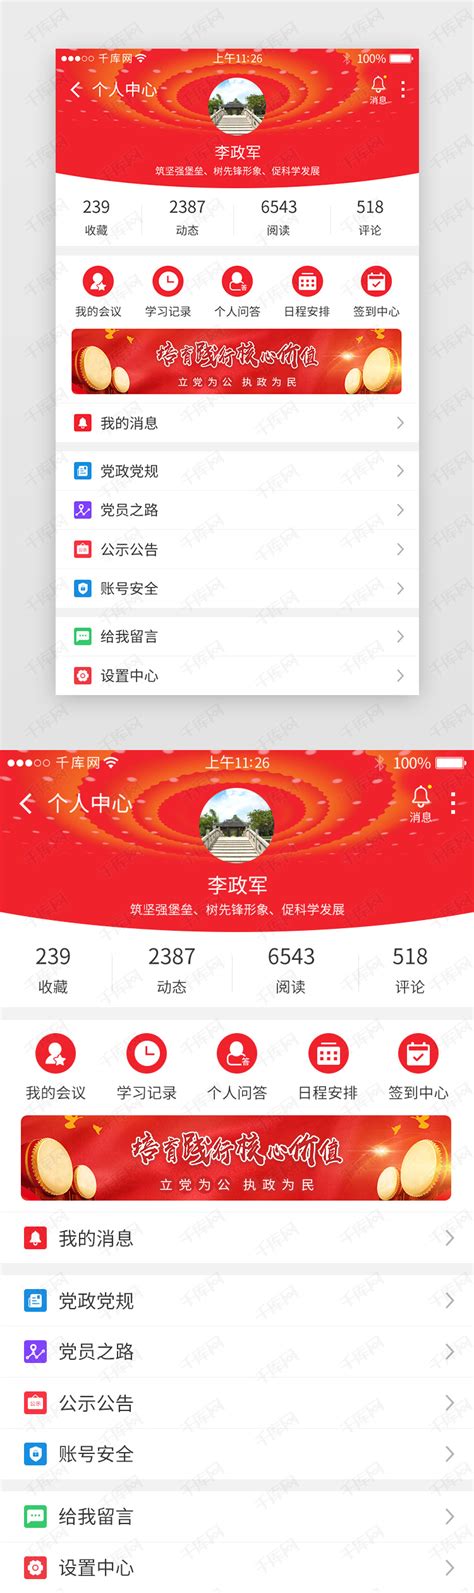 红色系党政app界面模板ui界面设计素材-千库网